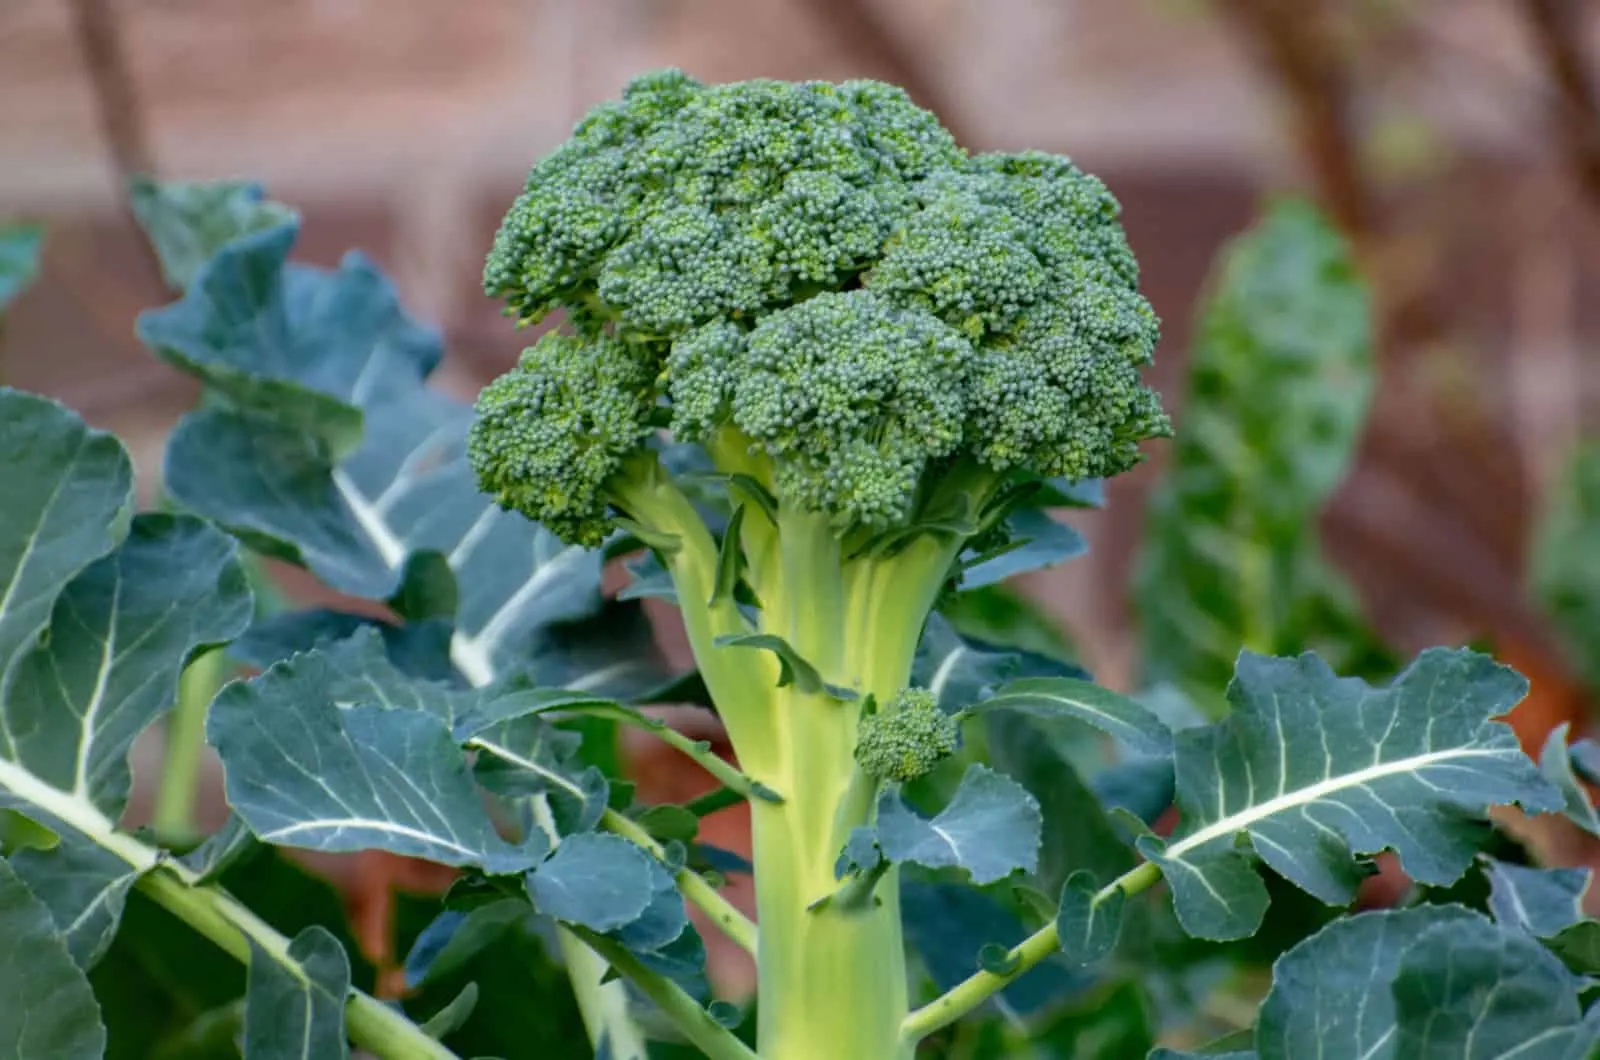 ripe broccoli